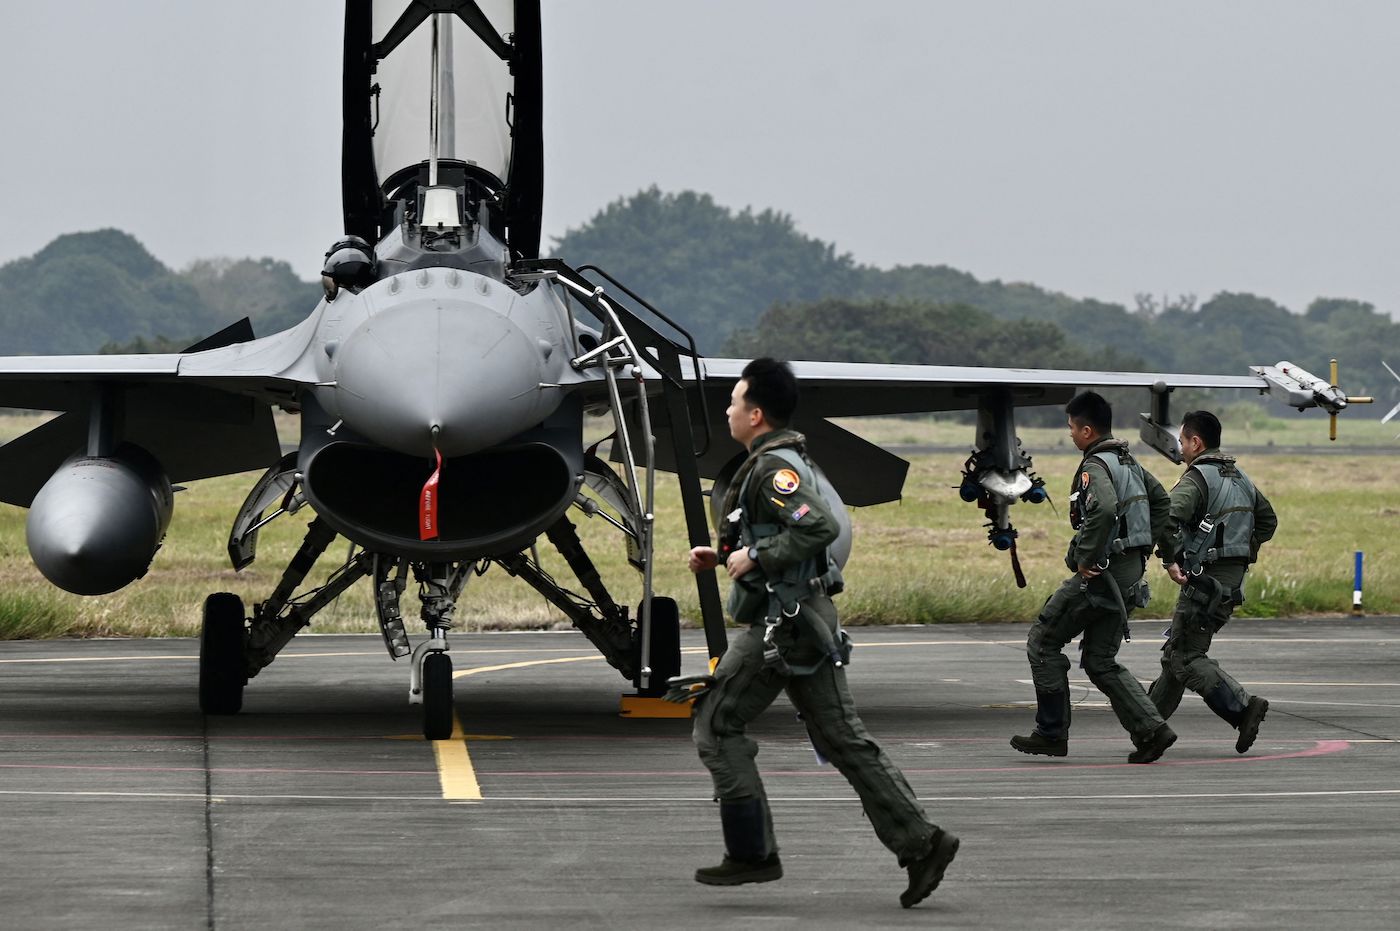 Пилоты ВВС Тайваня бегут к истребителю F-16V американского производства на базе ВВС в Чиайи, южный Тайвань, 5 января 2022 года. Фото: Sam Yeh/AFP via Getty Images